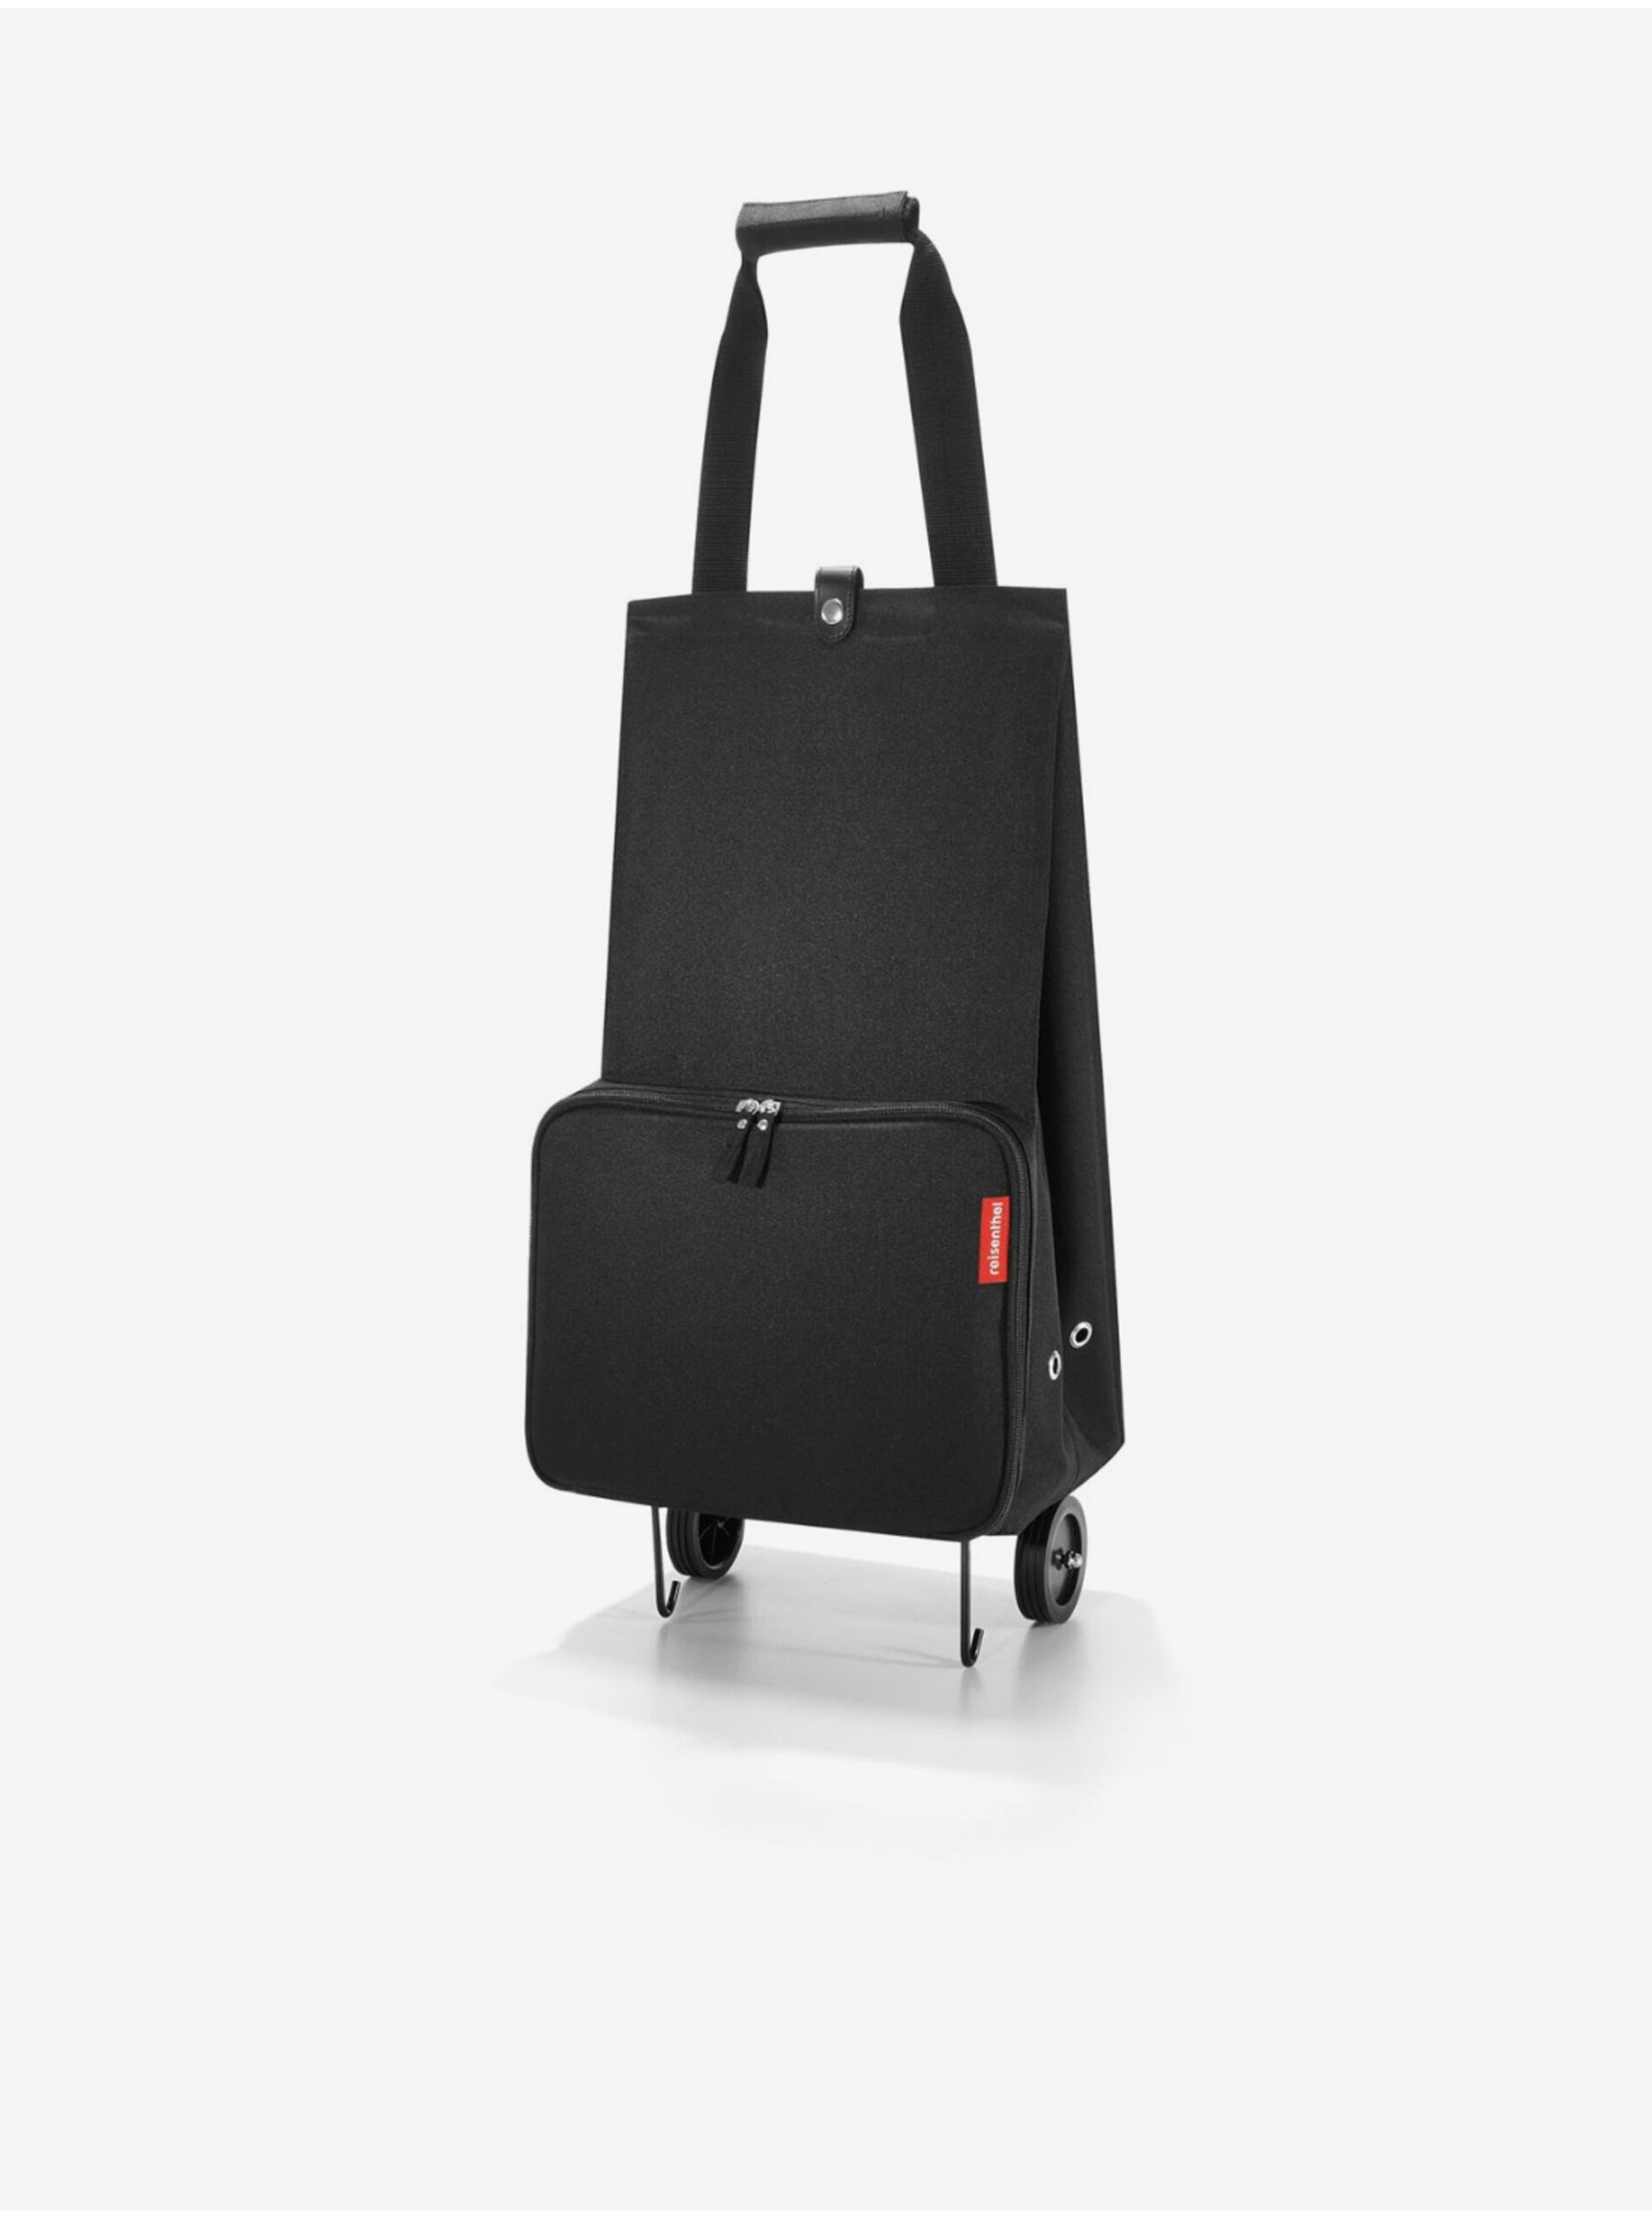 E-shop Černá nákupní taška na kolečkách Reisenthel Foldabletrolley